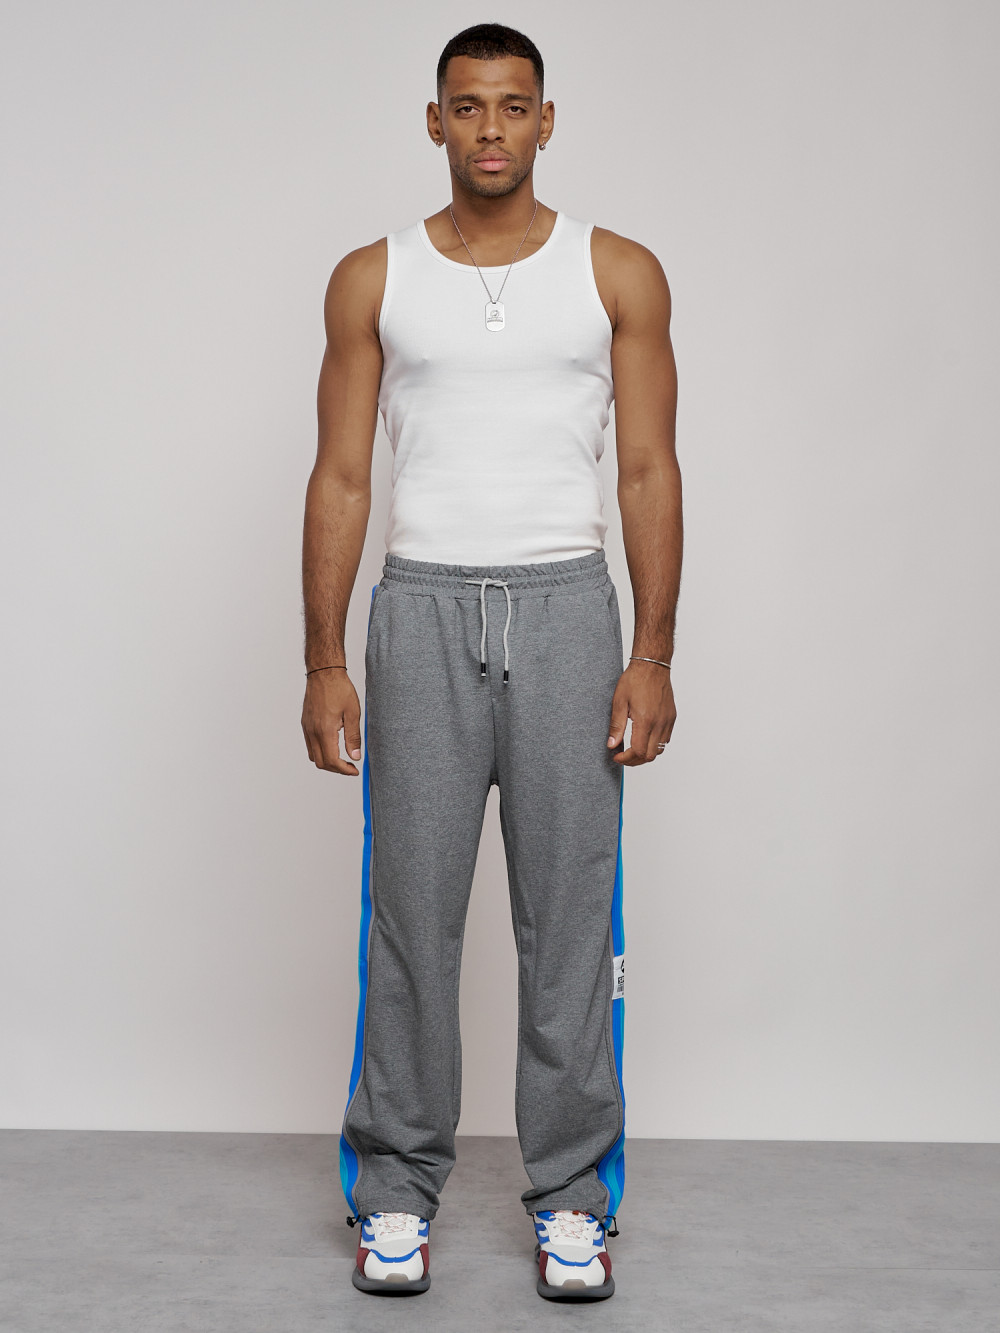 Купить штаны спортивные мужские оптом от производителя недорого в Москве 12903Sr